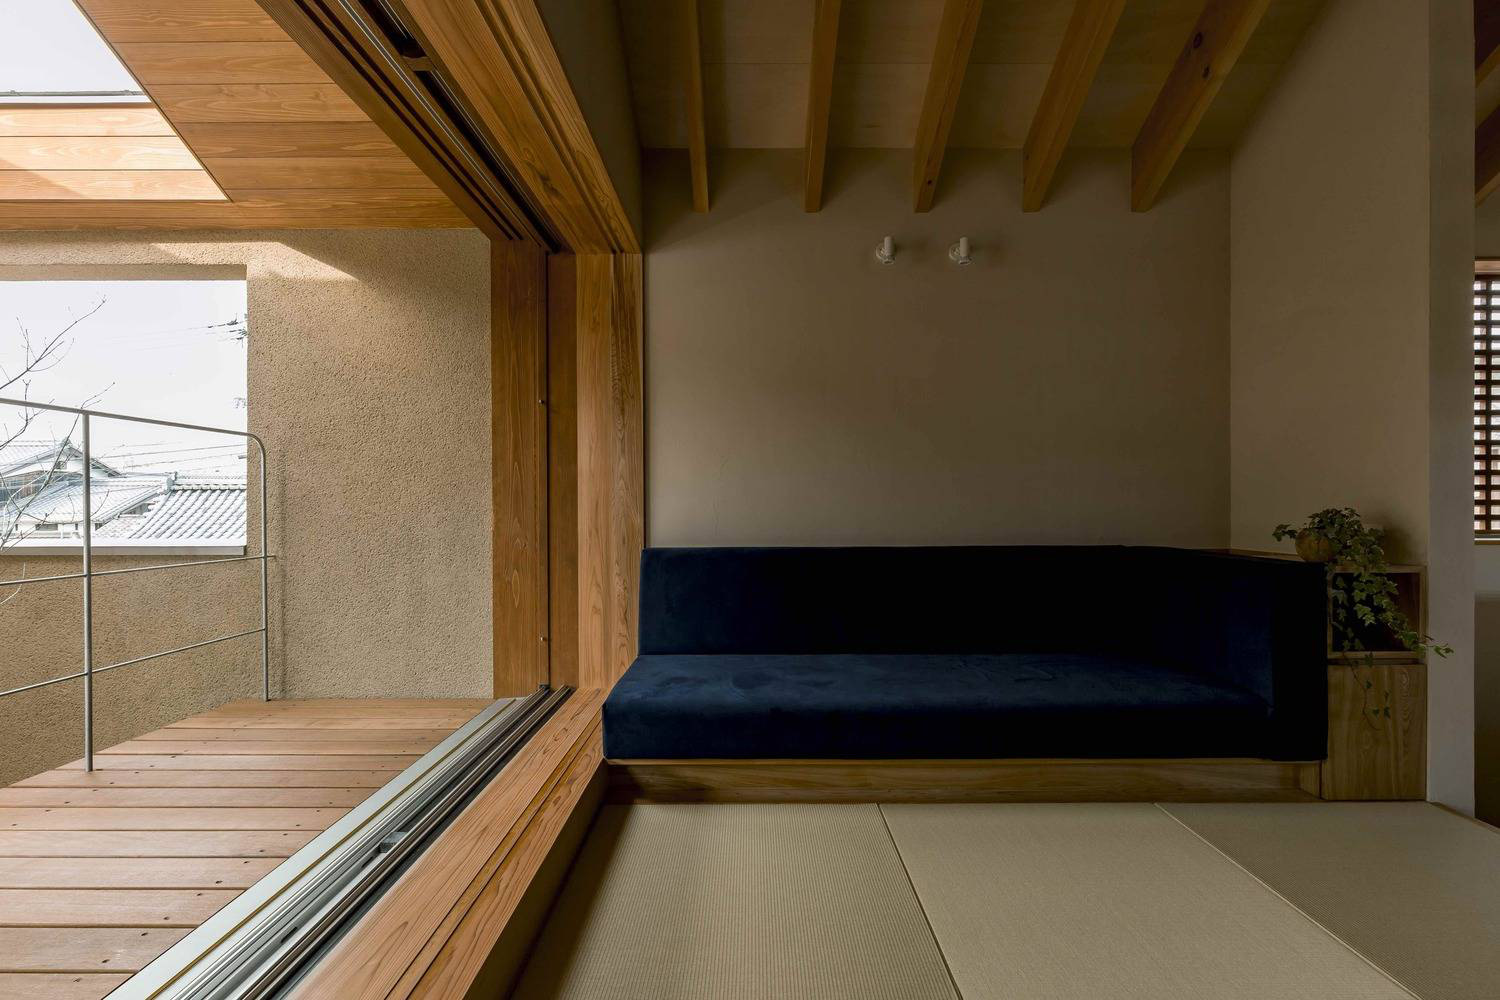 Hình ảnh một căn phòng trong nhà phố, nổi bật với sofa lót đệm xanh dương, lan can sắt, sàn lát gỗ